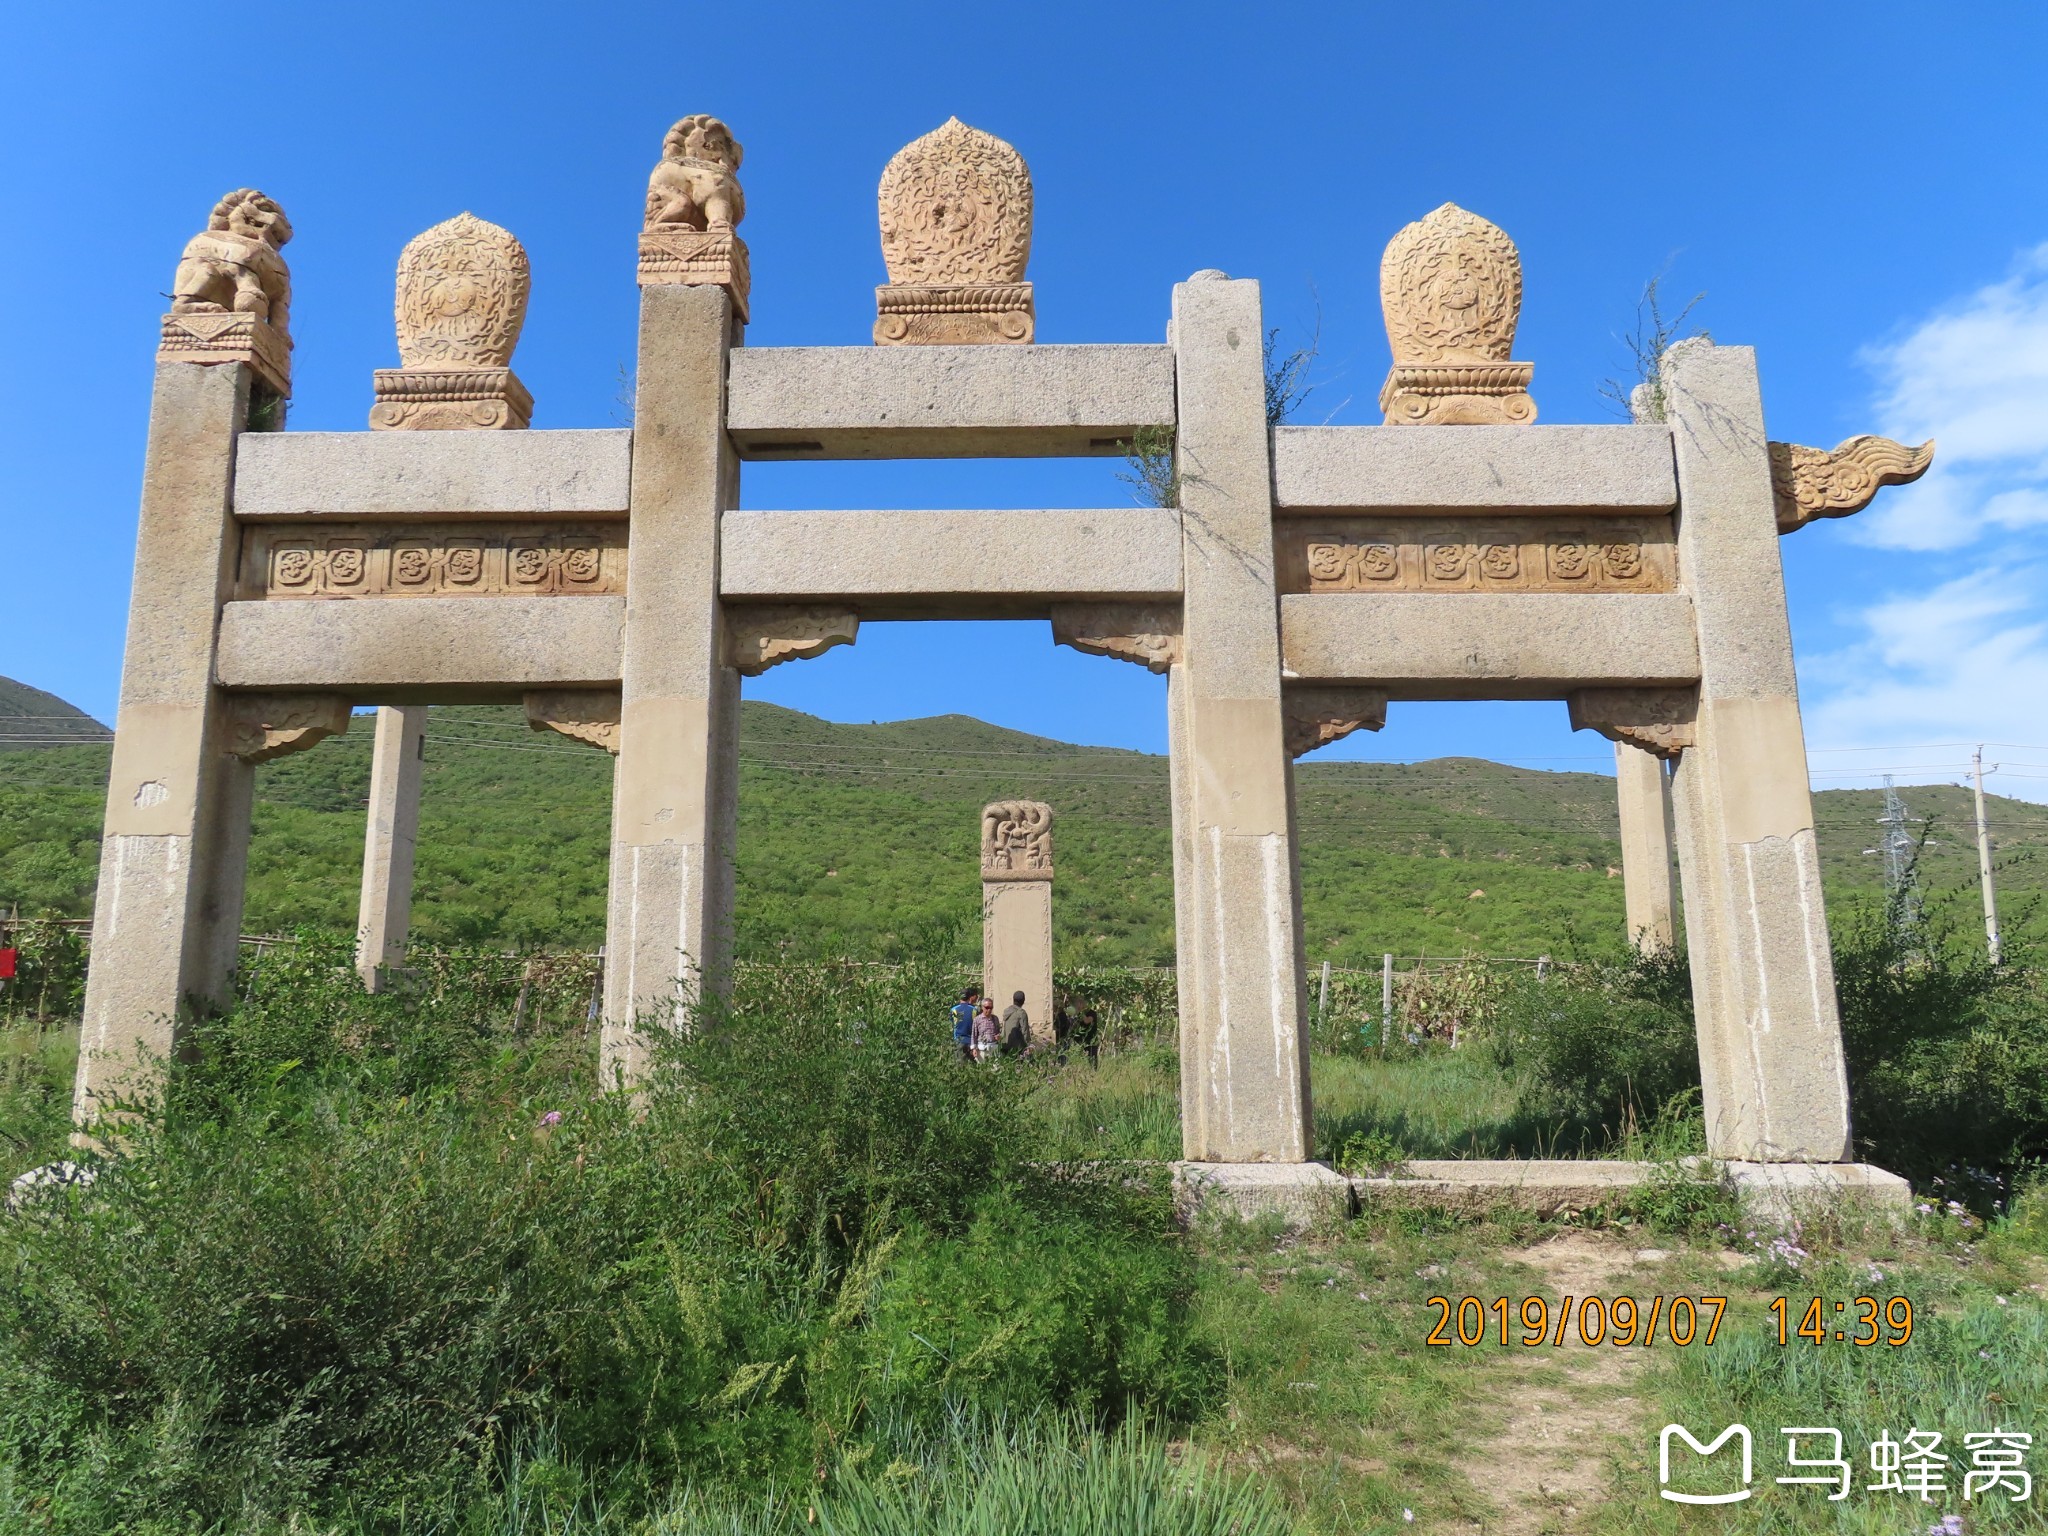 2019年9月7日—户外一日游—3—游览喀喇沁旗十家村和硕端静公主墓-胡